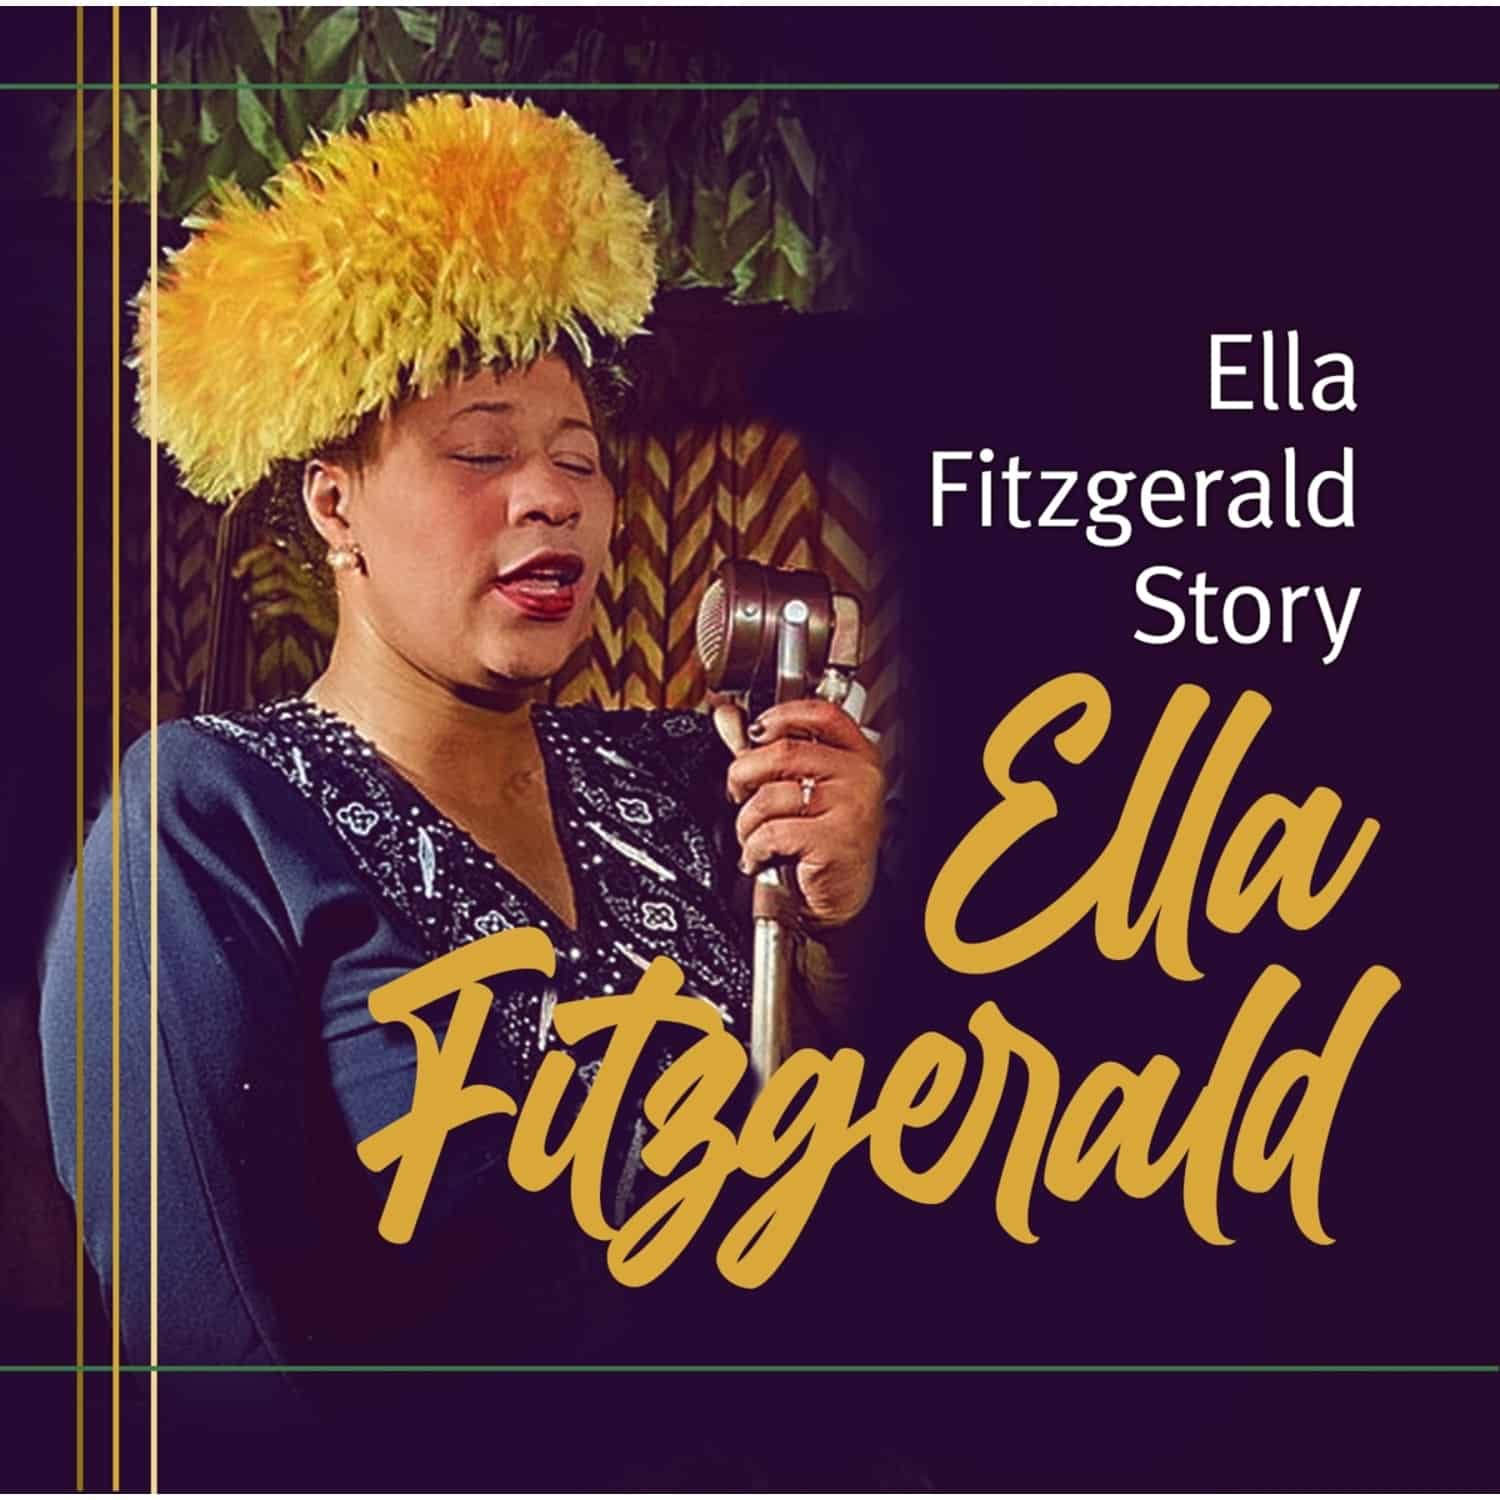 E.-Omid P.Eftekhari-T.Tippner Fitzgerald - ELLA FITZGERALD STORY 